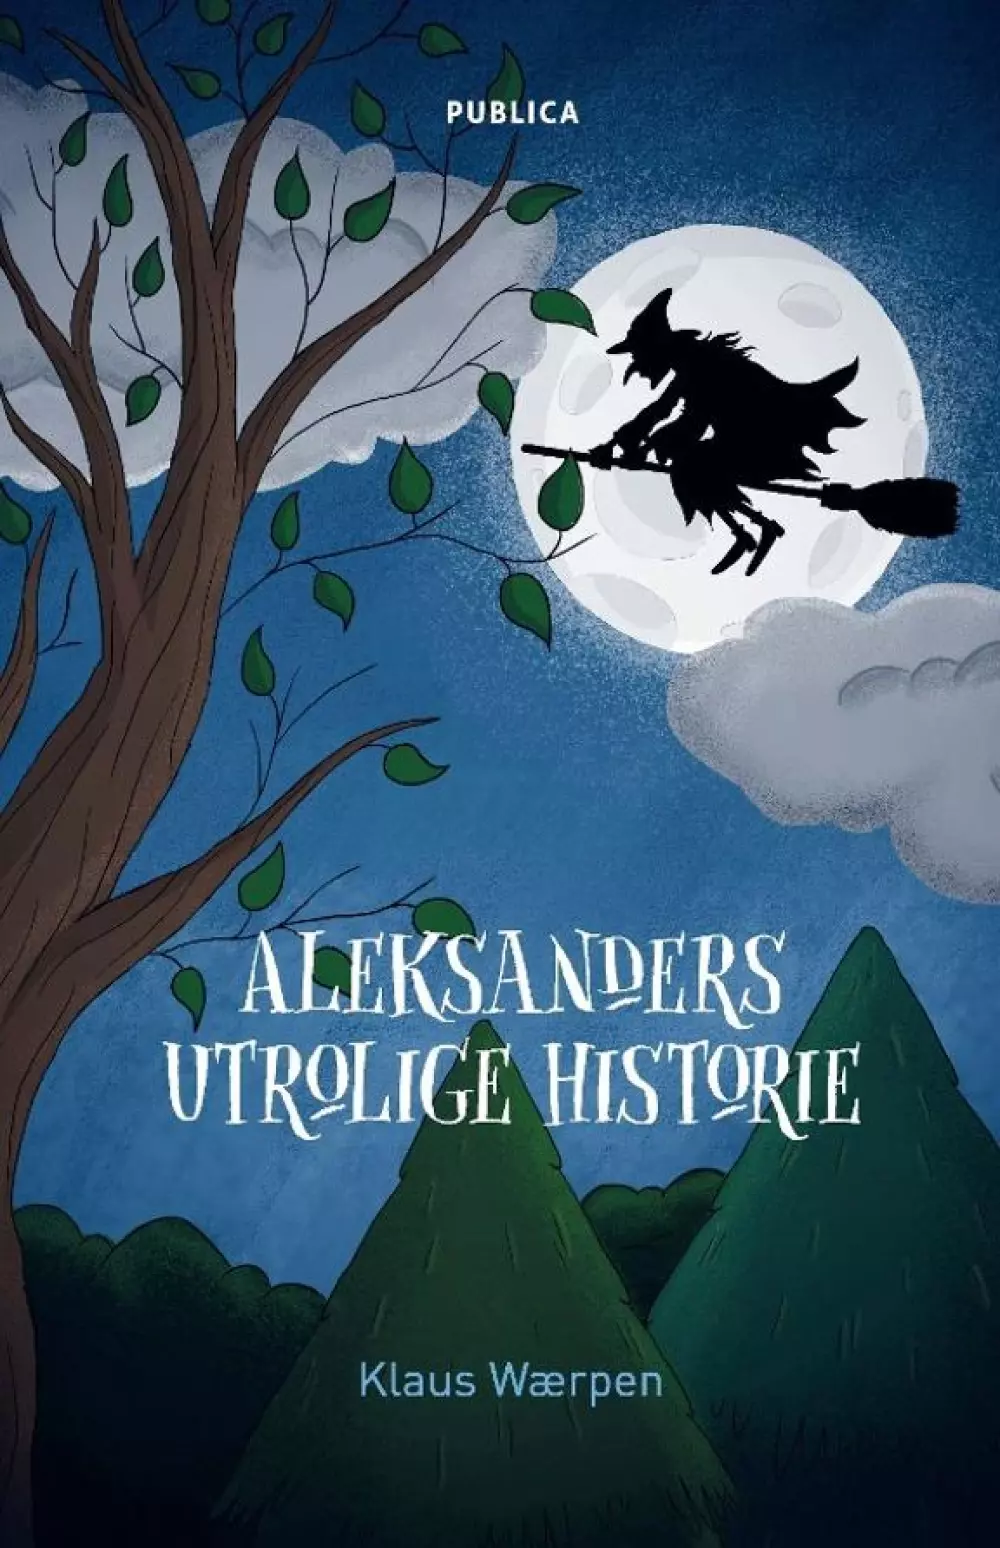 Aleksanders utrolige historie